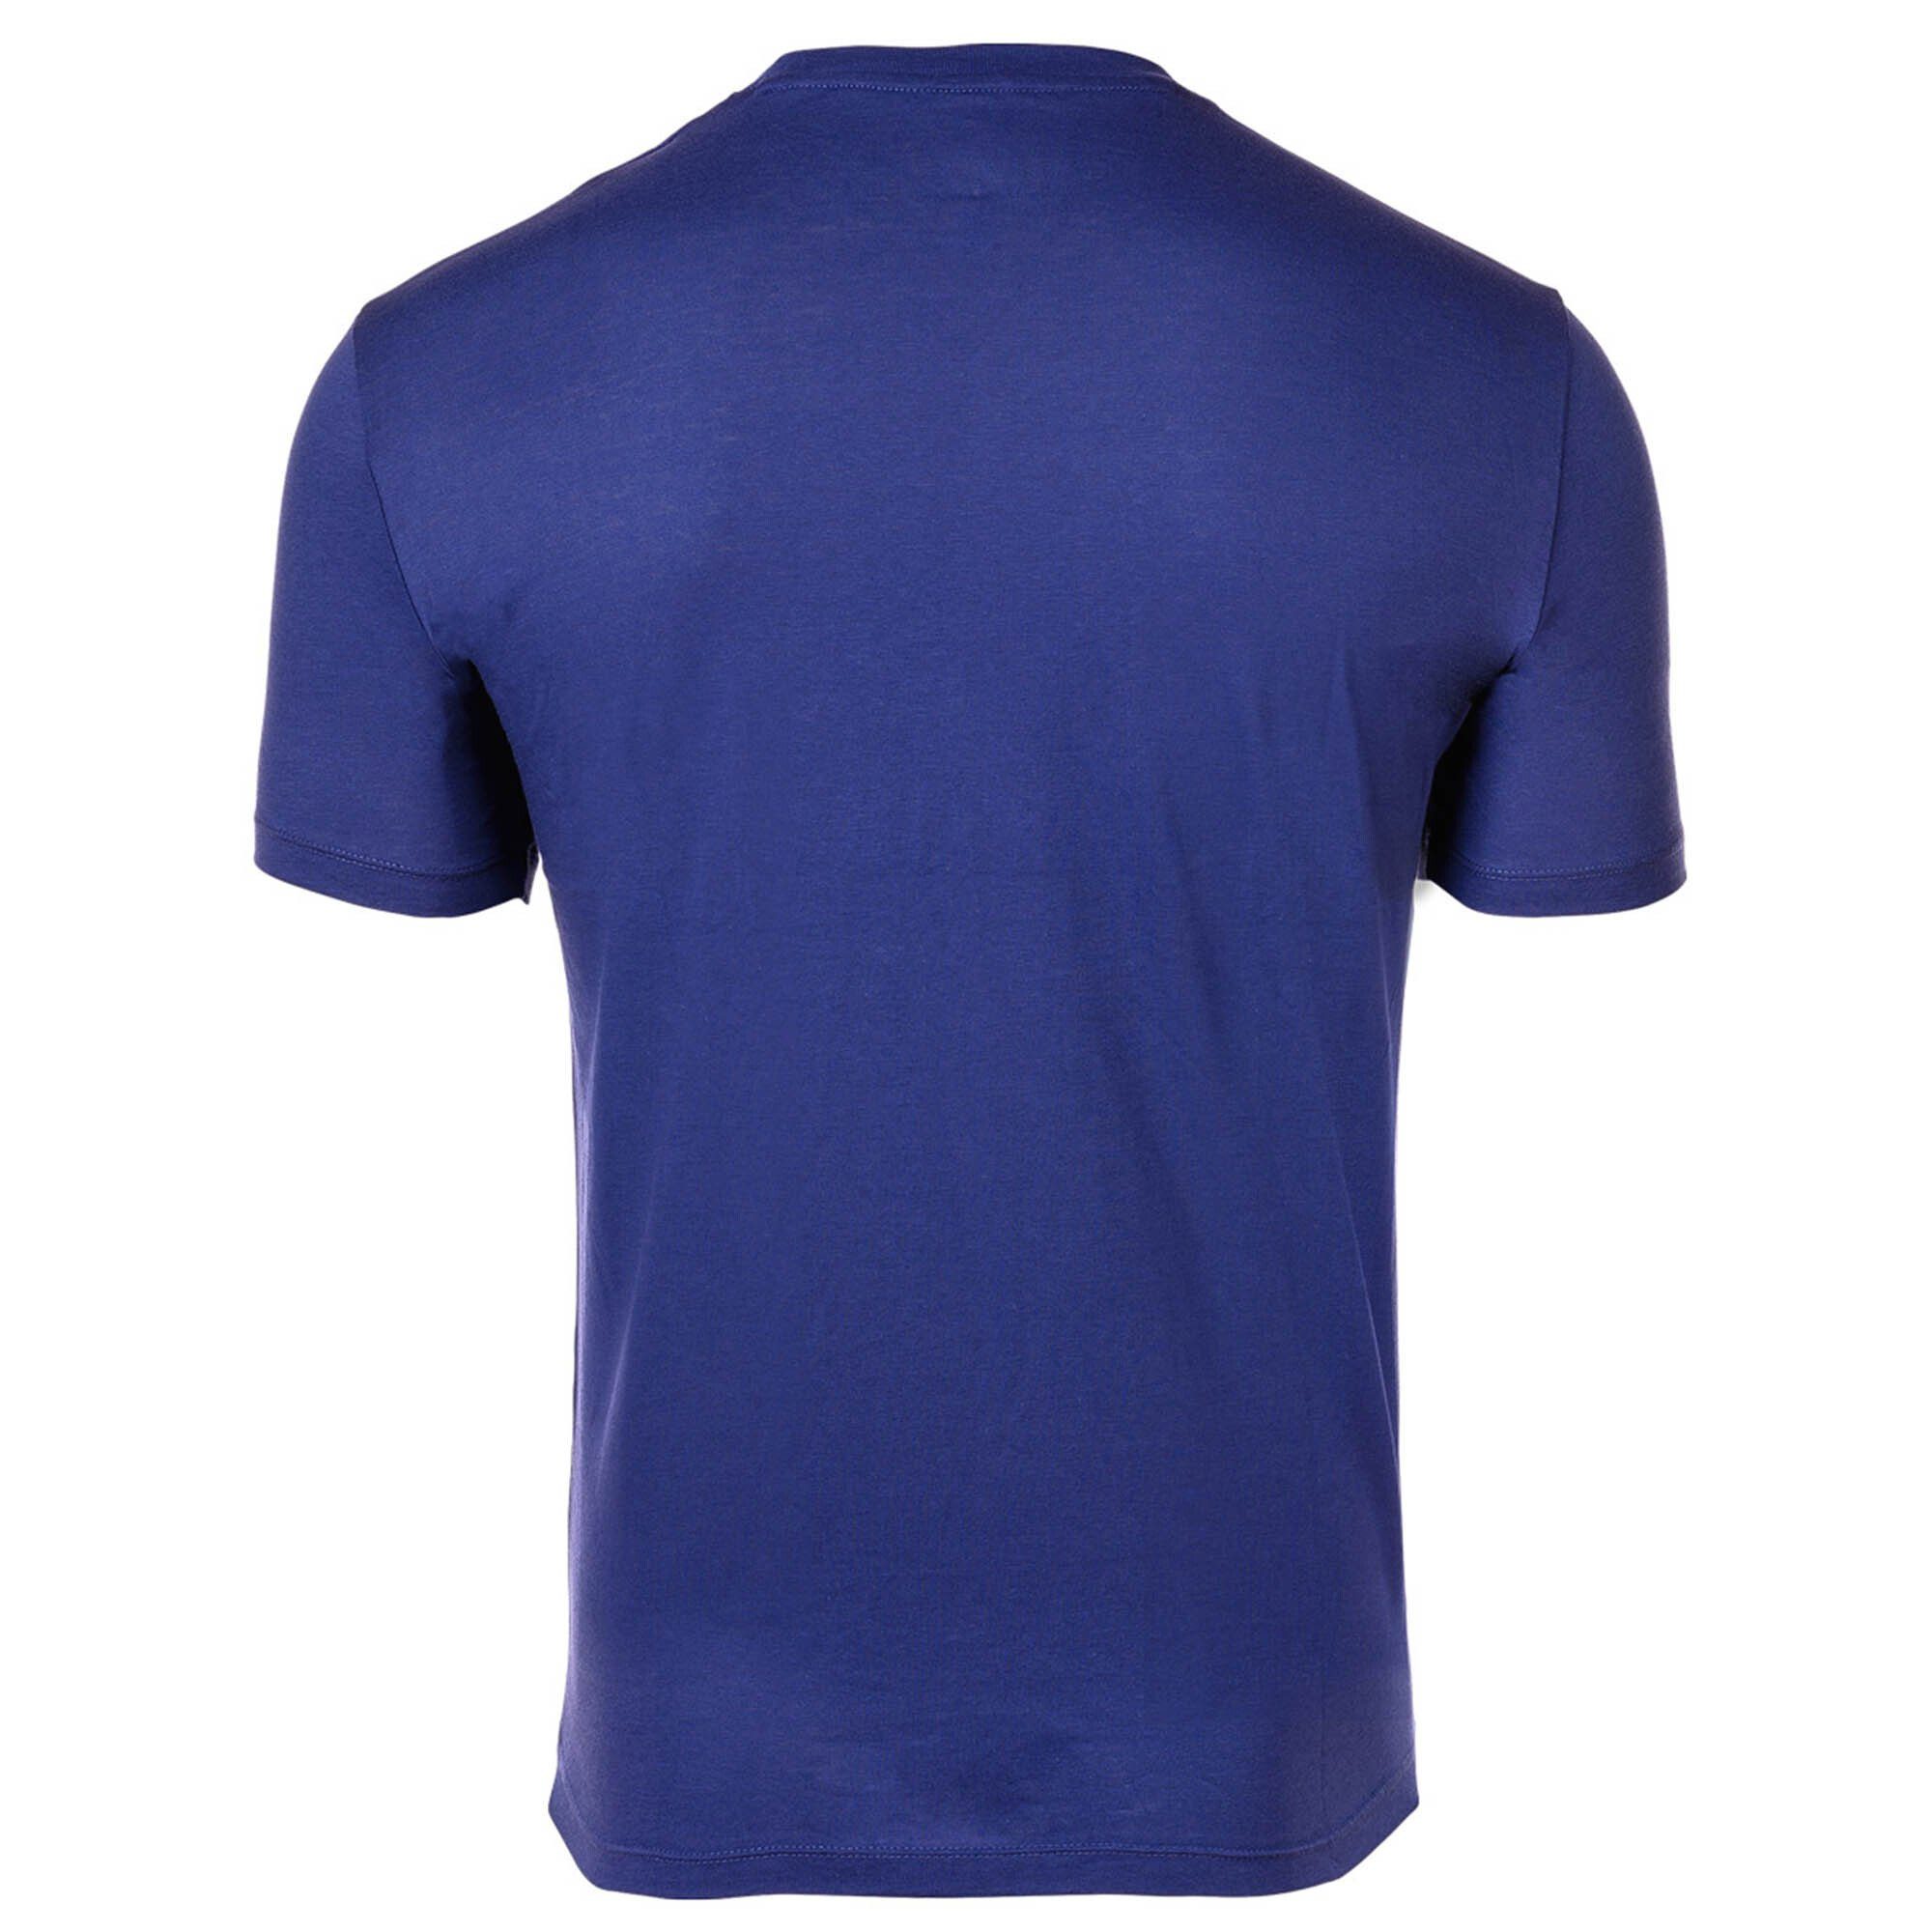 ARMANI EXCHANGE T-Shirt Rundhals, - Schriftzug, T-Shirt Ultramarine) (New Herren Cotton Blau